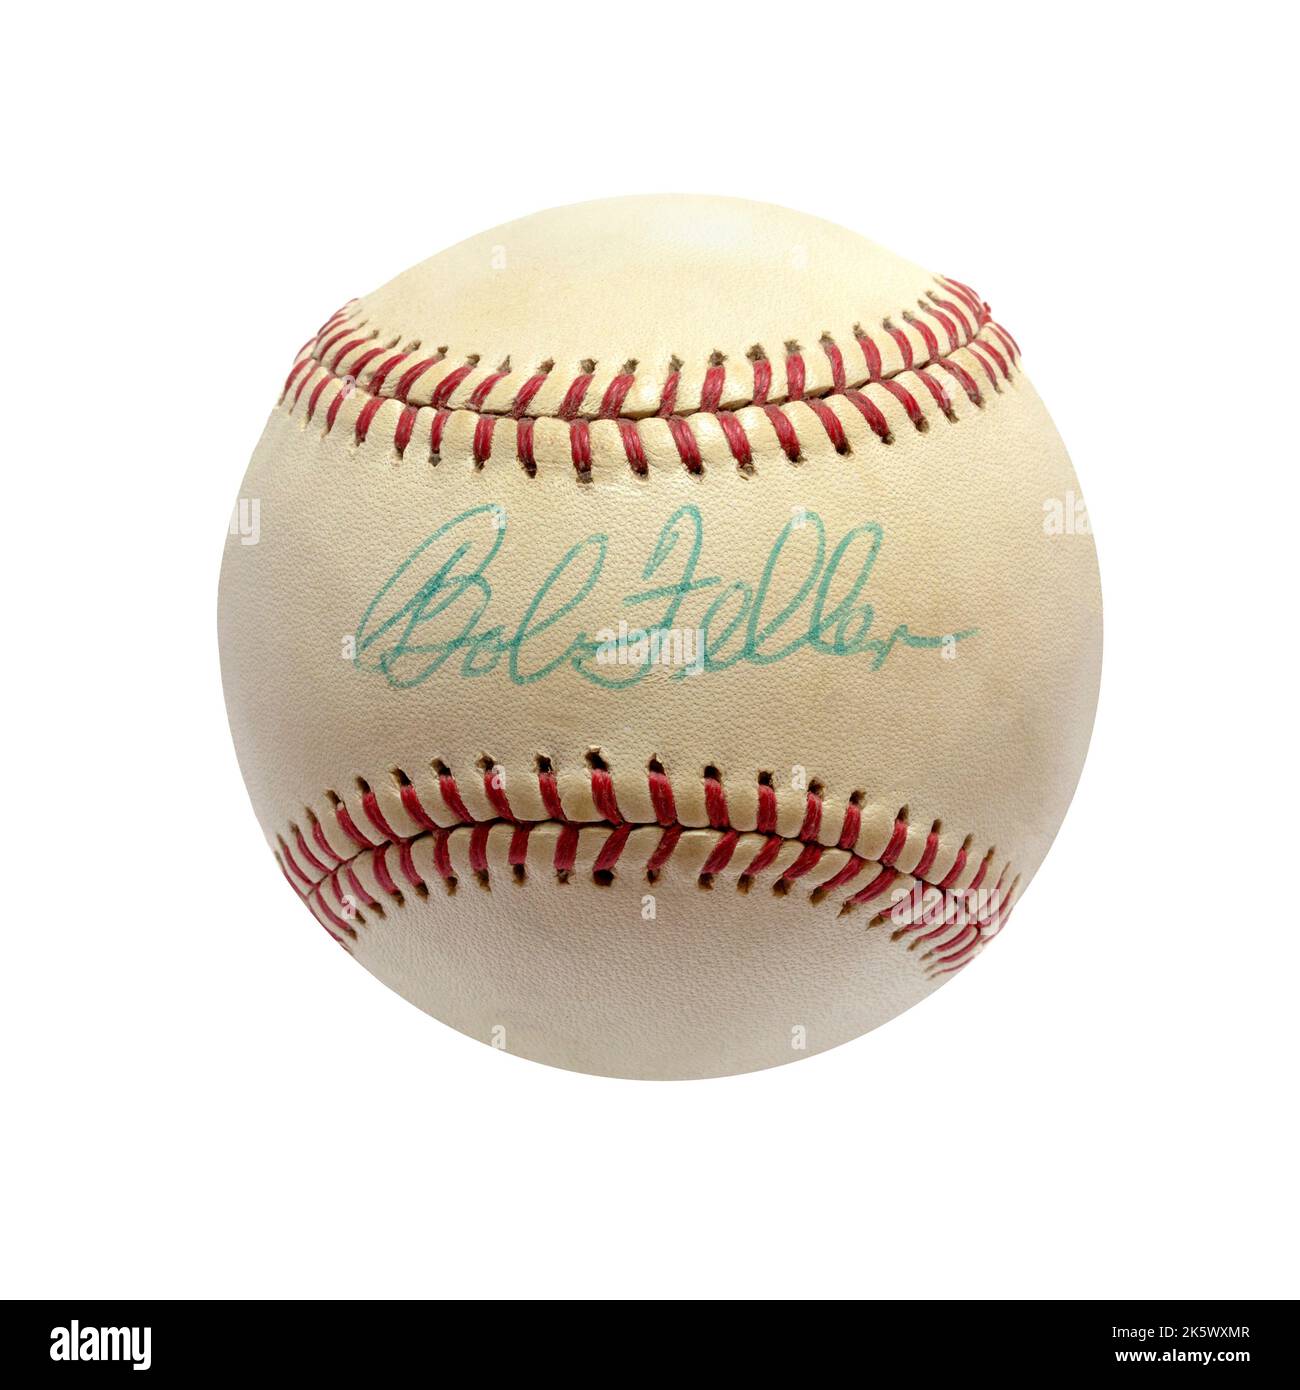 Ein historischer, handsignierter Baseballspieler, signiert von der Hall of Fame der Cleveland Indians, Pitcher Bob Feller Stockfoto